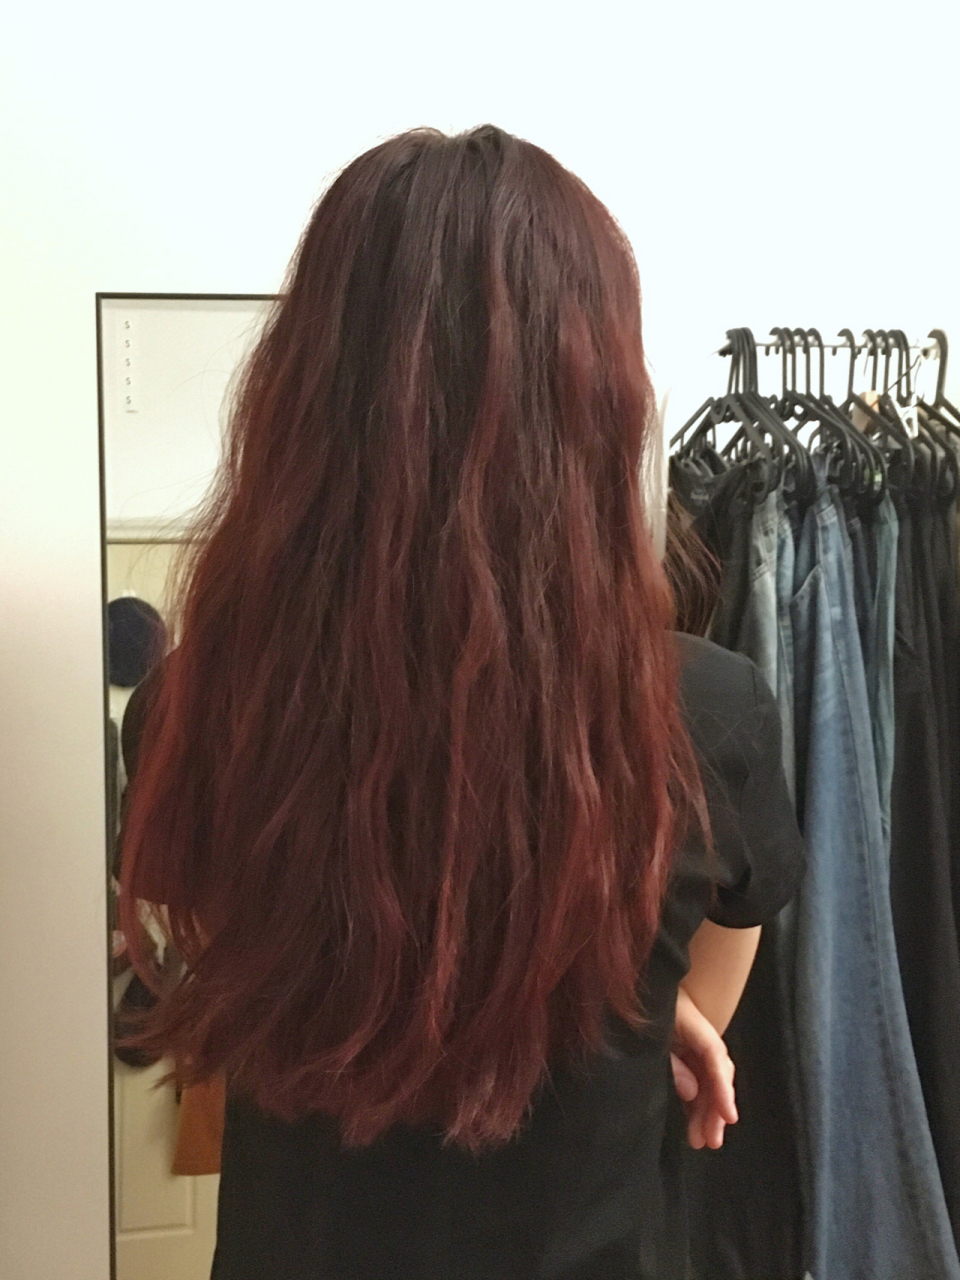 红棕色染发的褪色过程 第一周:头几次洗头发会掉色 感觉还是偏紫色 第